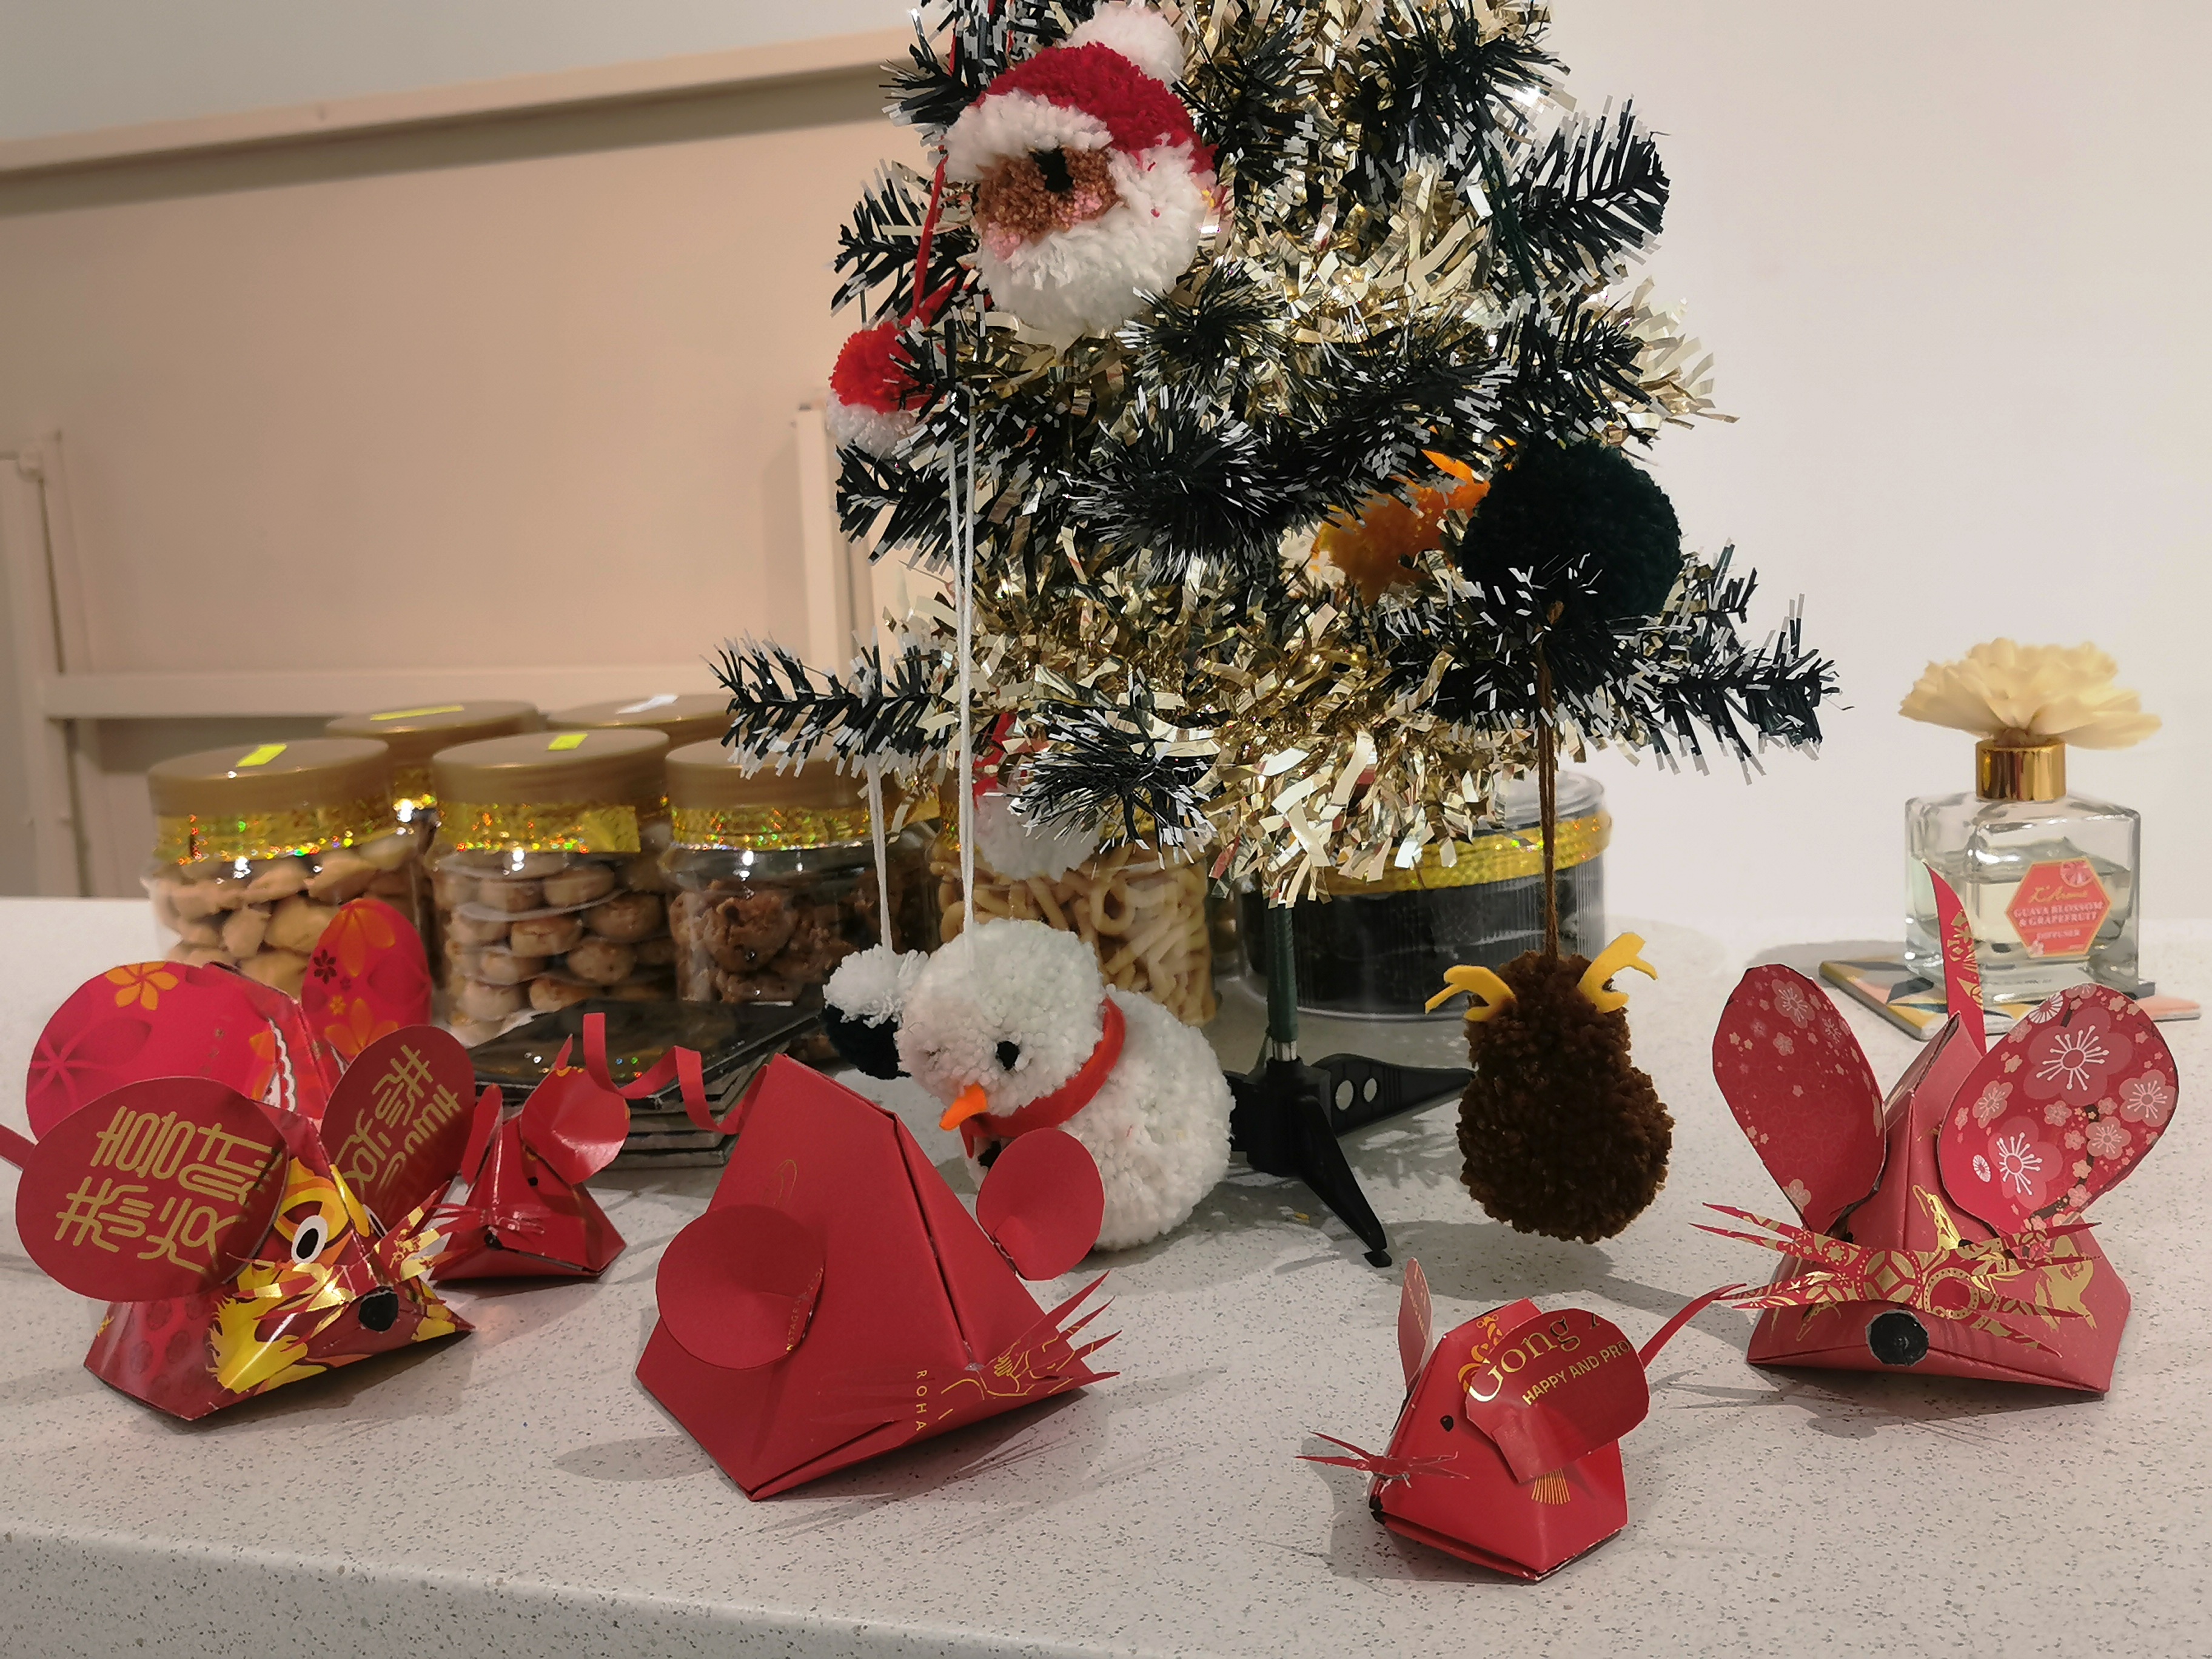 由于圣诞节和农历新年时间太过接近，出现了手作红包鼠作品和圣诞节戳戳乐作品“齐聚一堂”的情况。-杨琇媖摄-